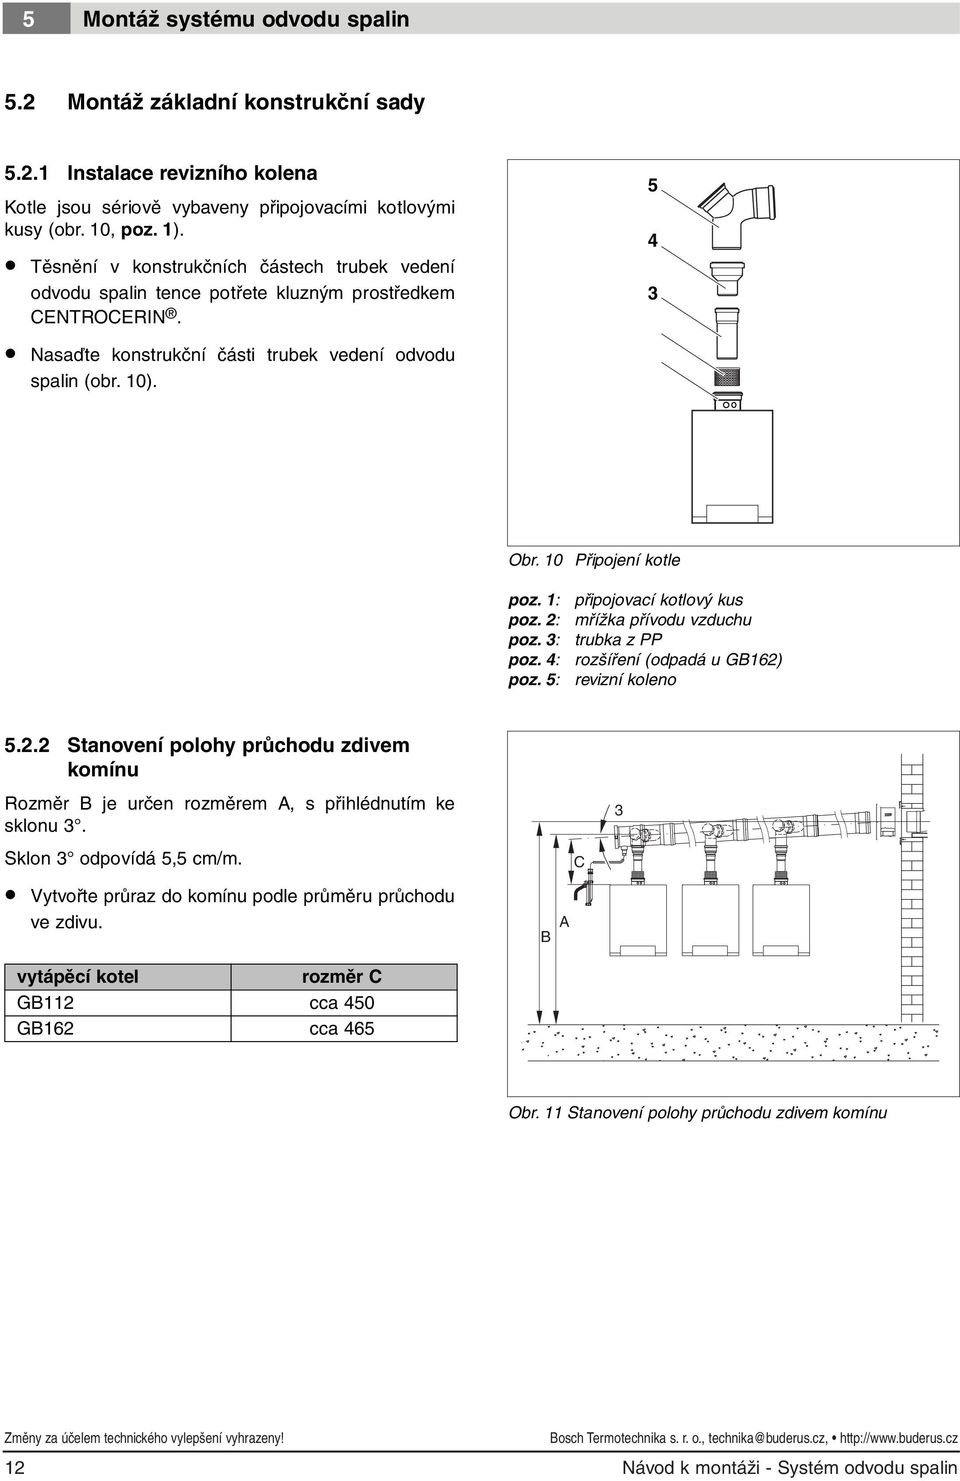 0 Připojení kotle poz. : poz. : poz. 3: poz. 4: poz. 5: připojovací kotlový kus mřížka přívodu vzduchu trubka z PP rozšíření (odpadá u GB6) revizní koleno 5.